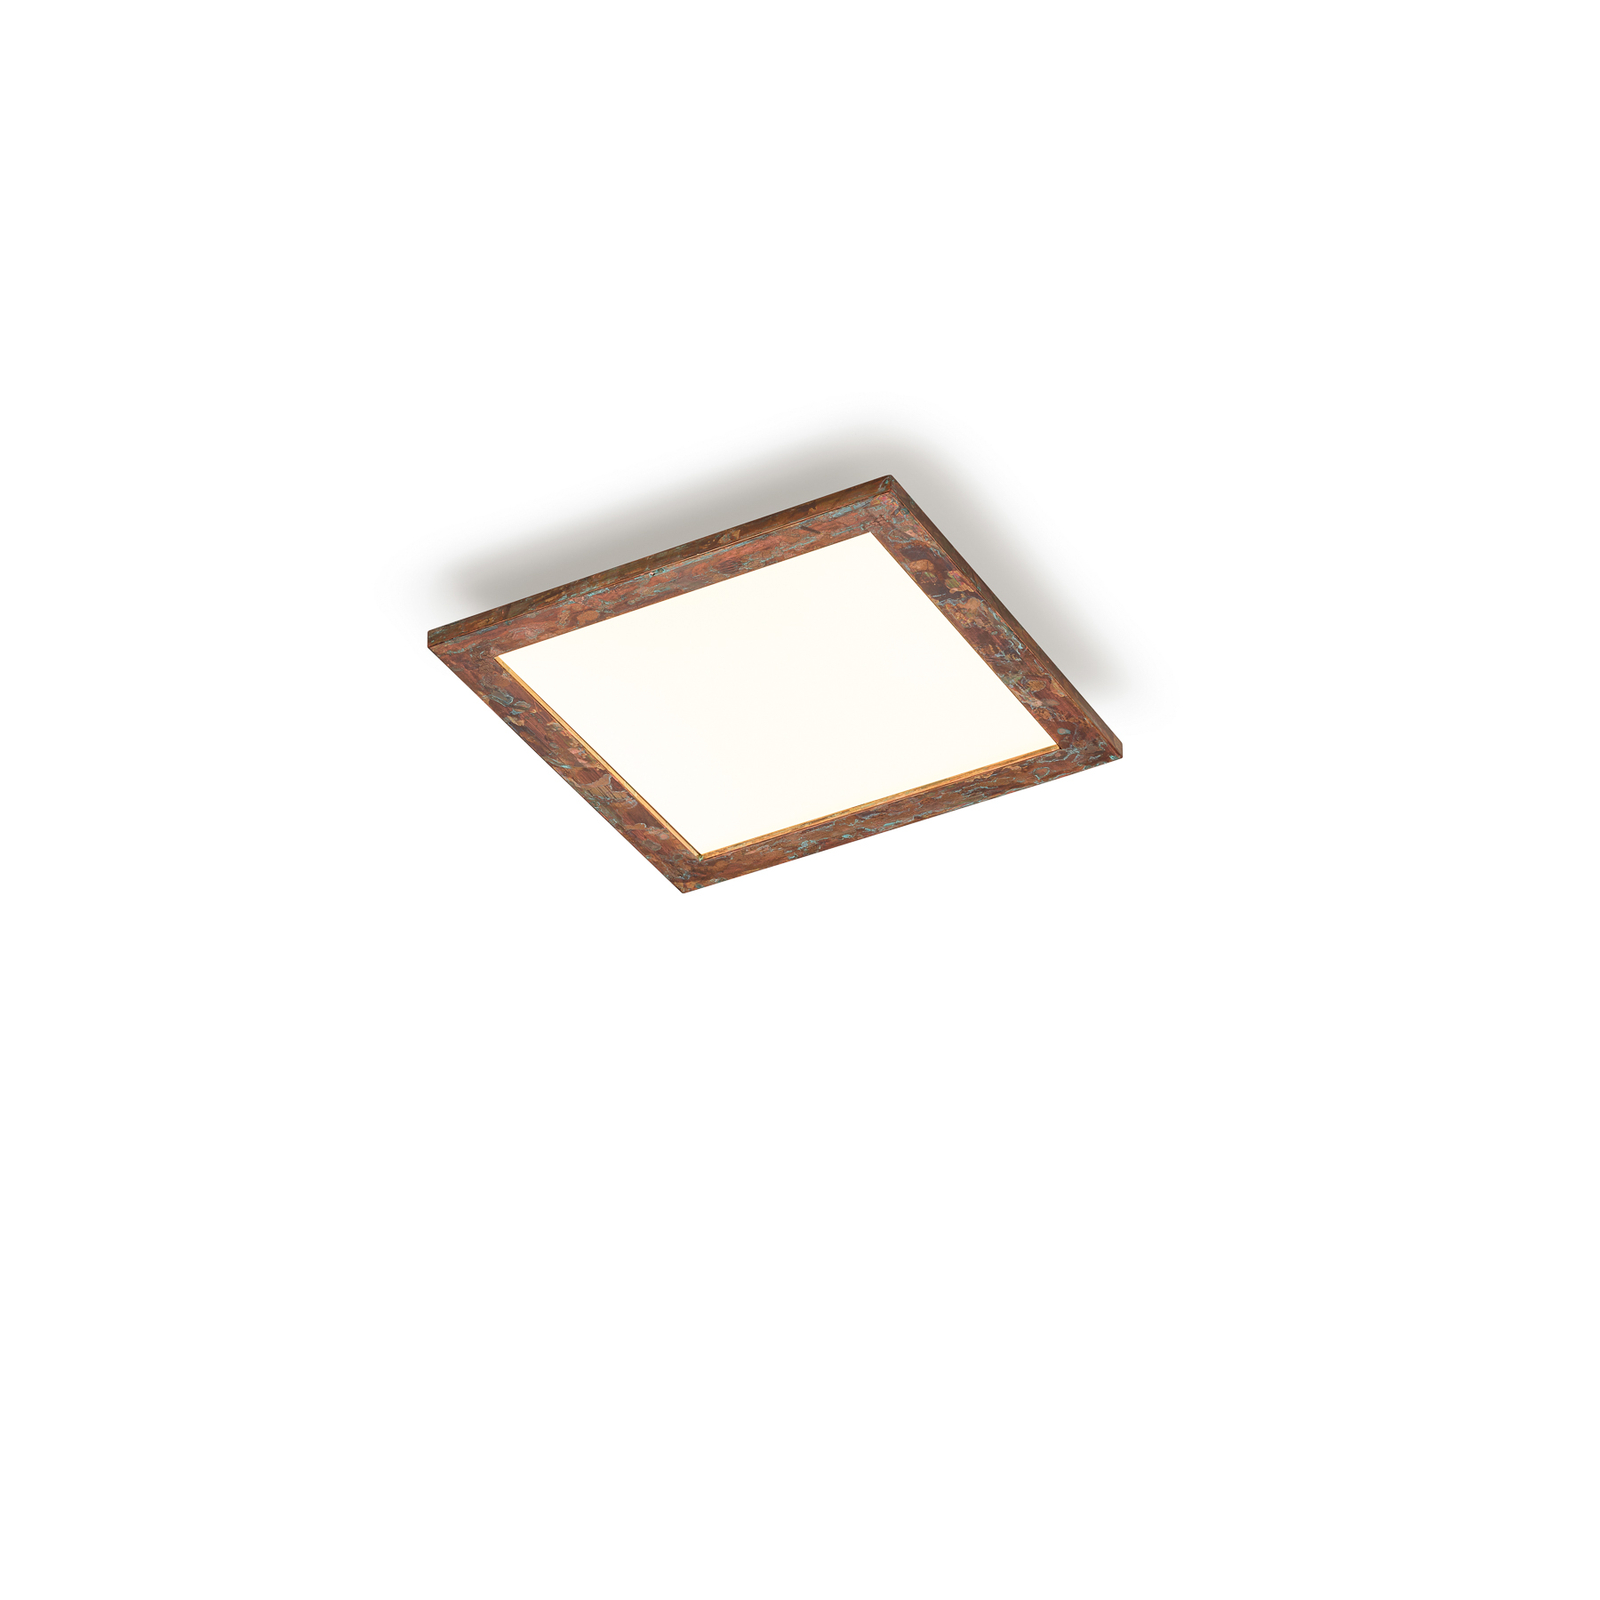 Quitani Aurinor LED panel, réz, 45 cm